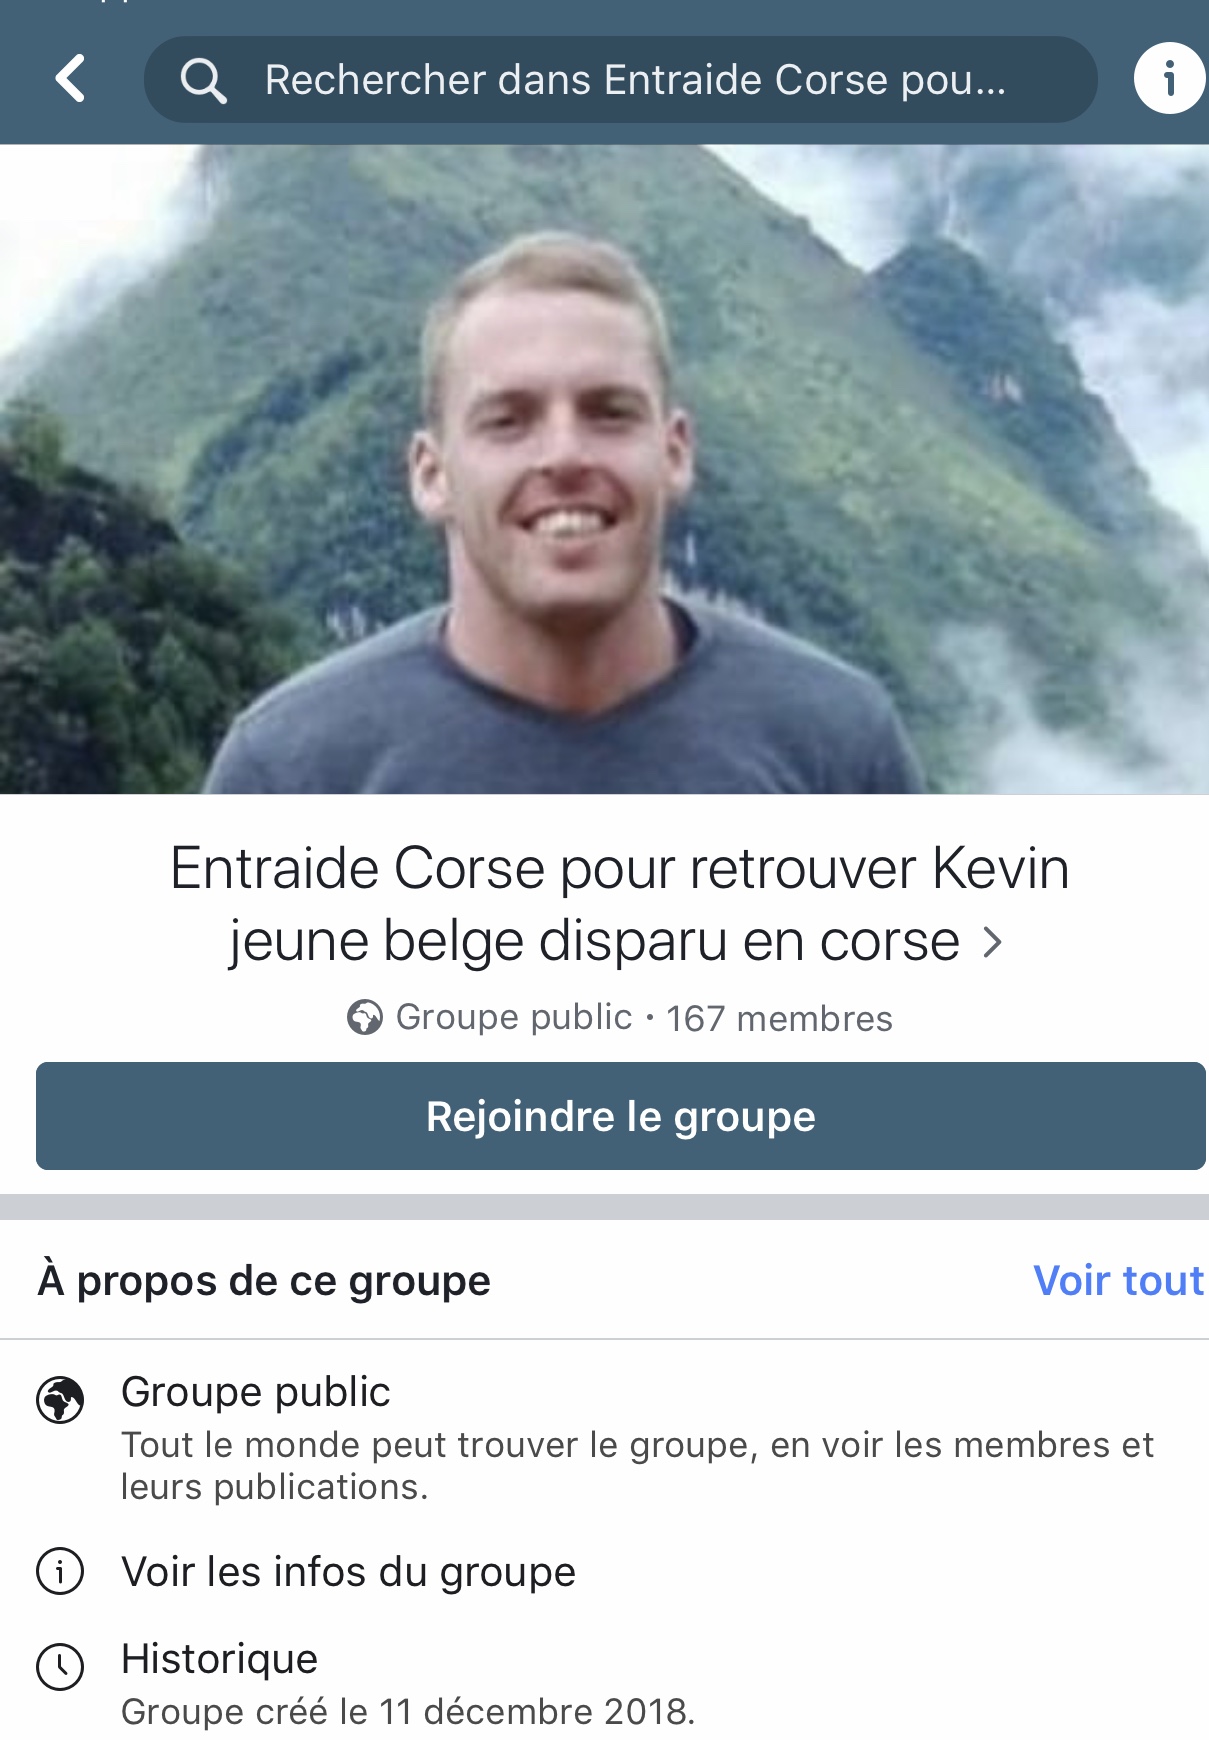 Randonneur belge disparu : Sa famille s'est mise à sa recherche en Corse